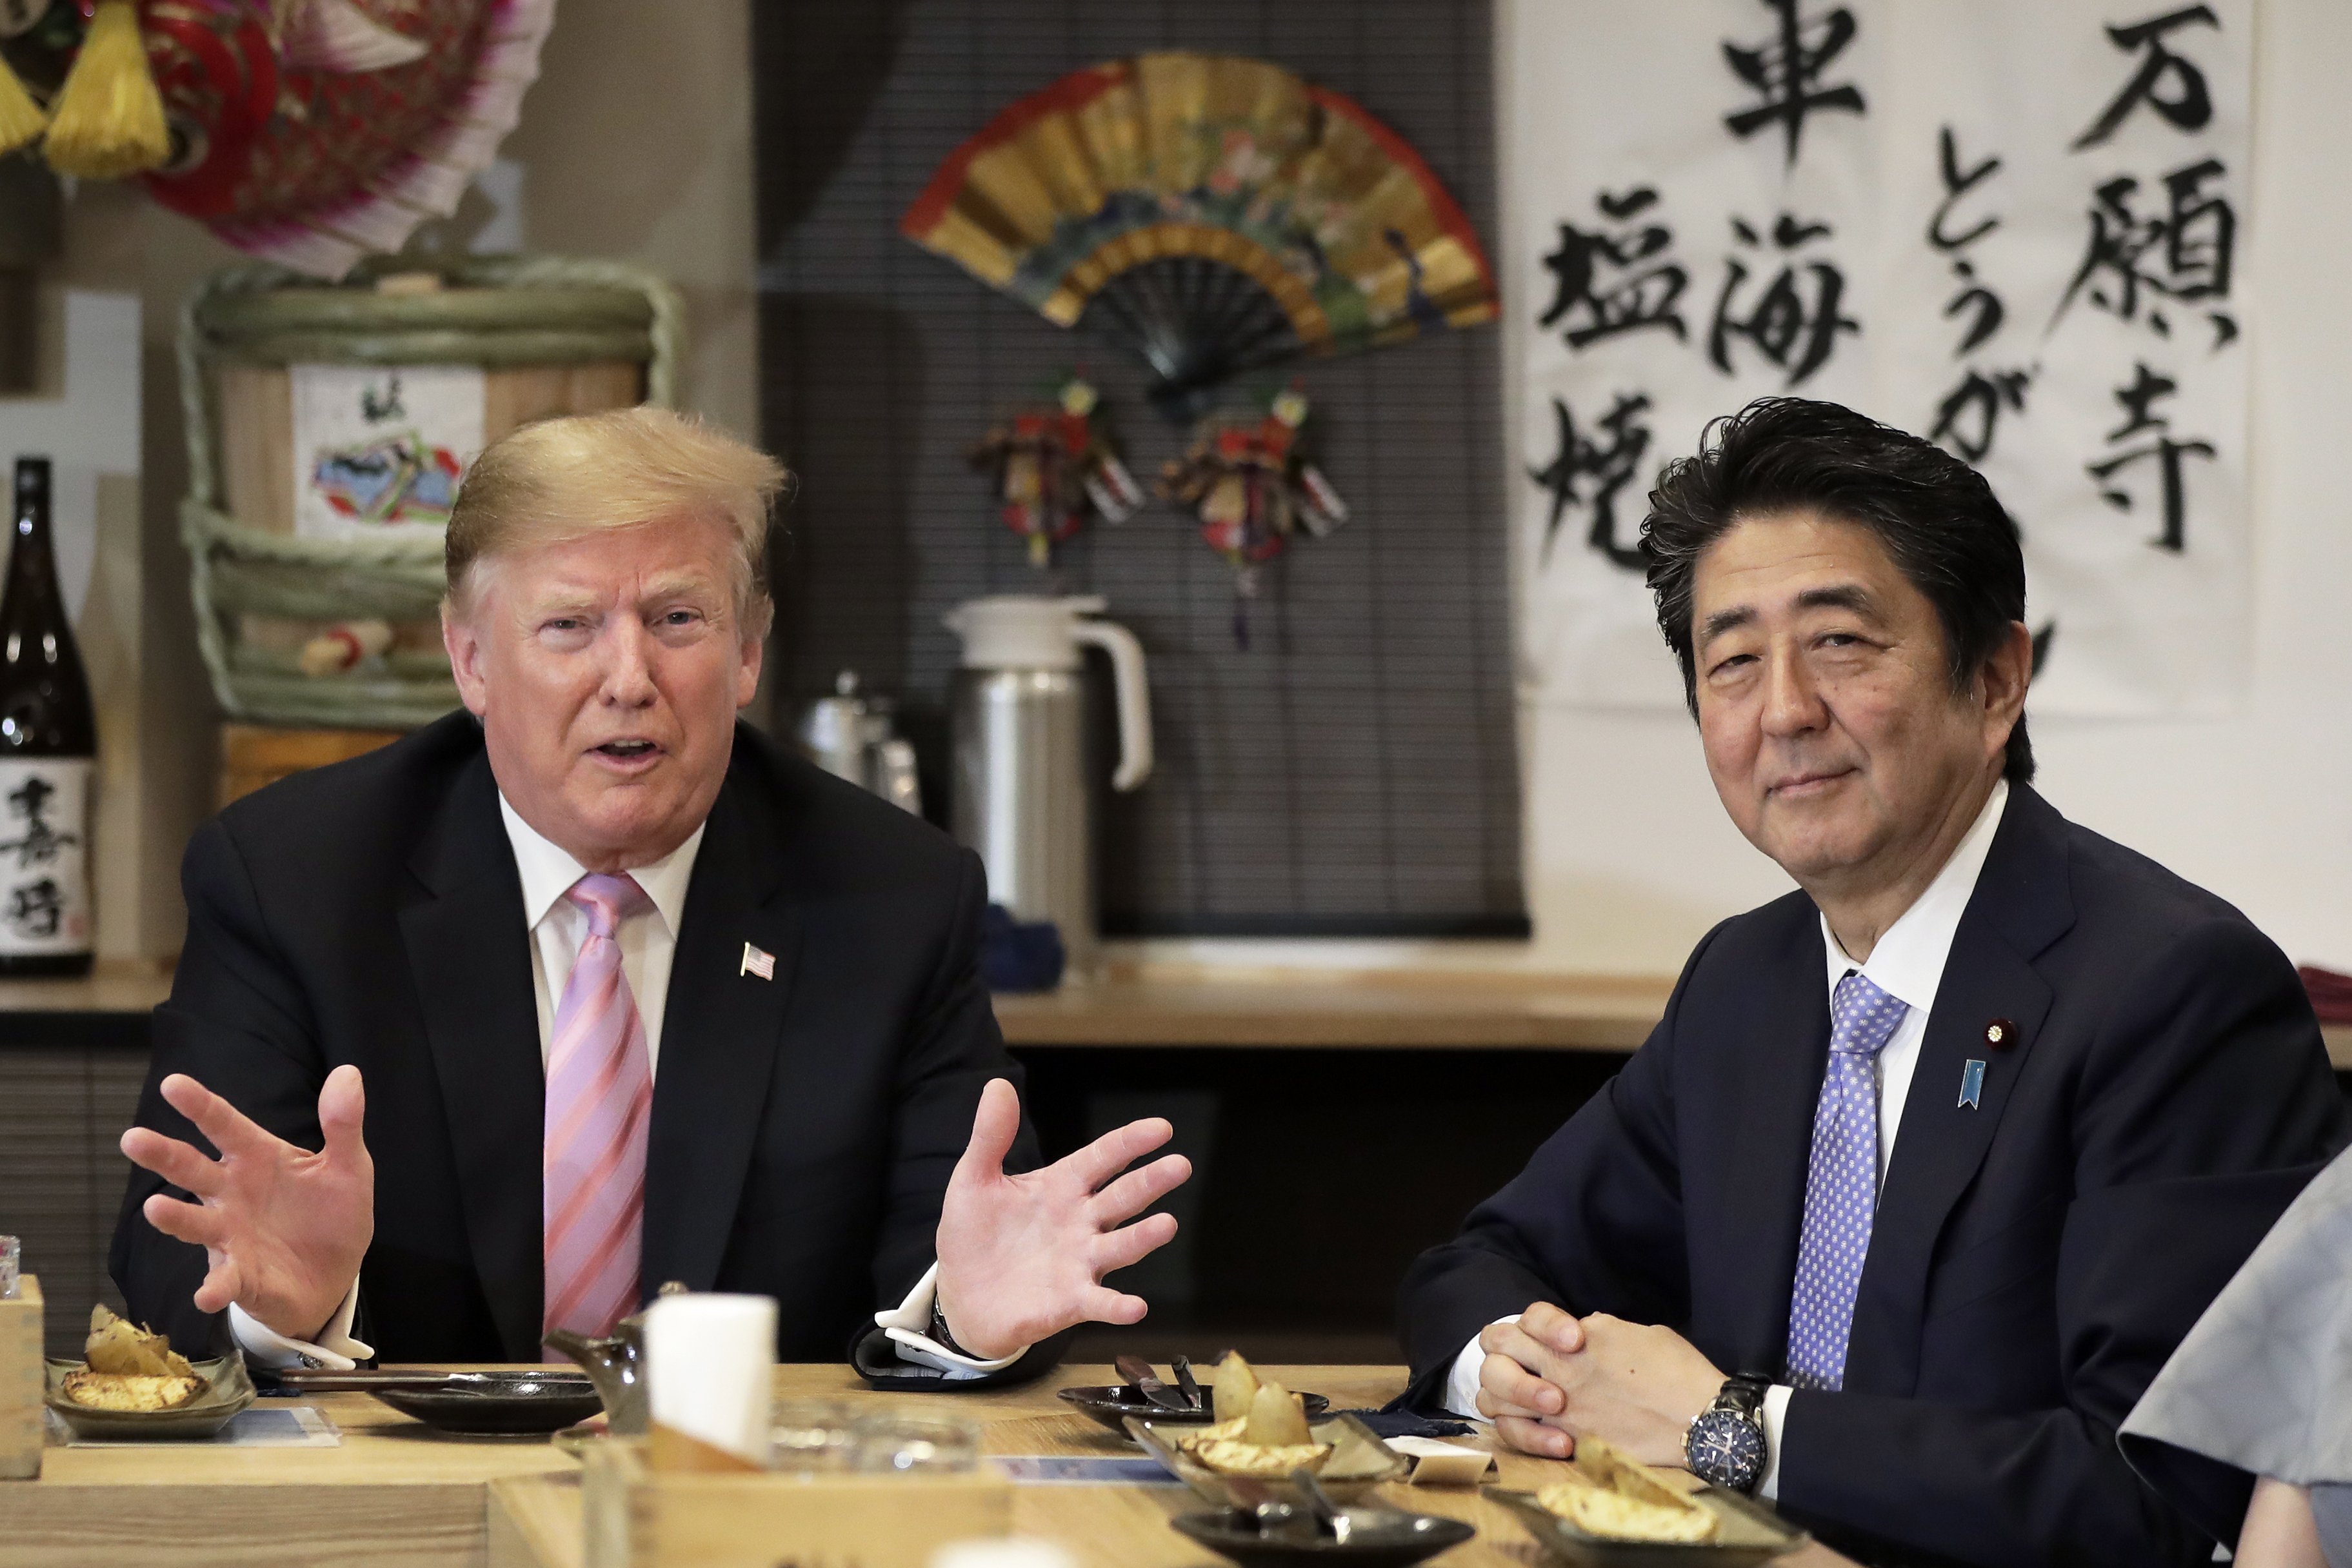 Tramp drugog dana posete Japanu gledao sumo rvanje i igrao golf sa Abeom 2